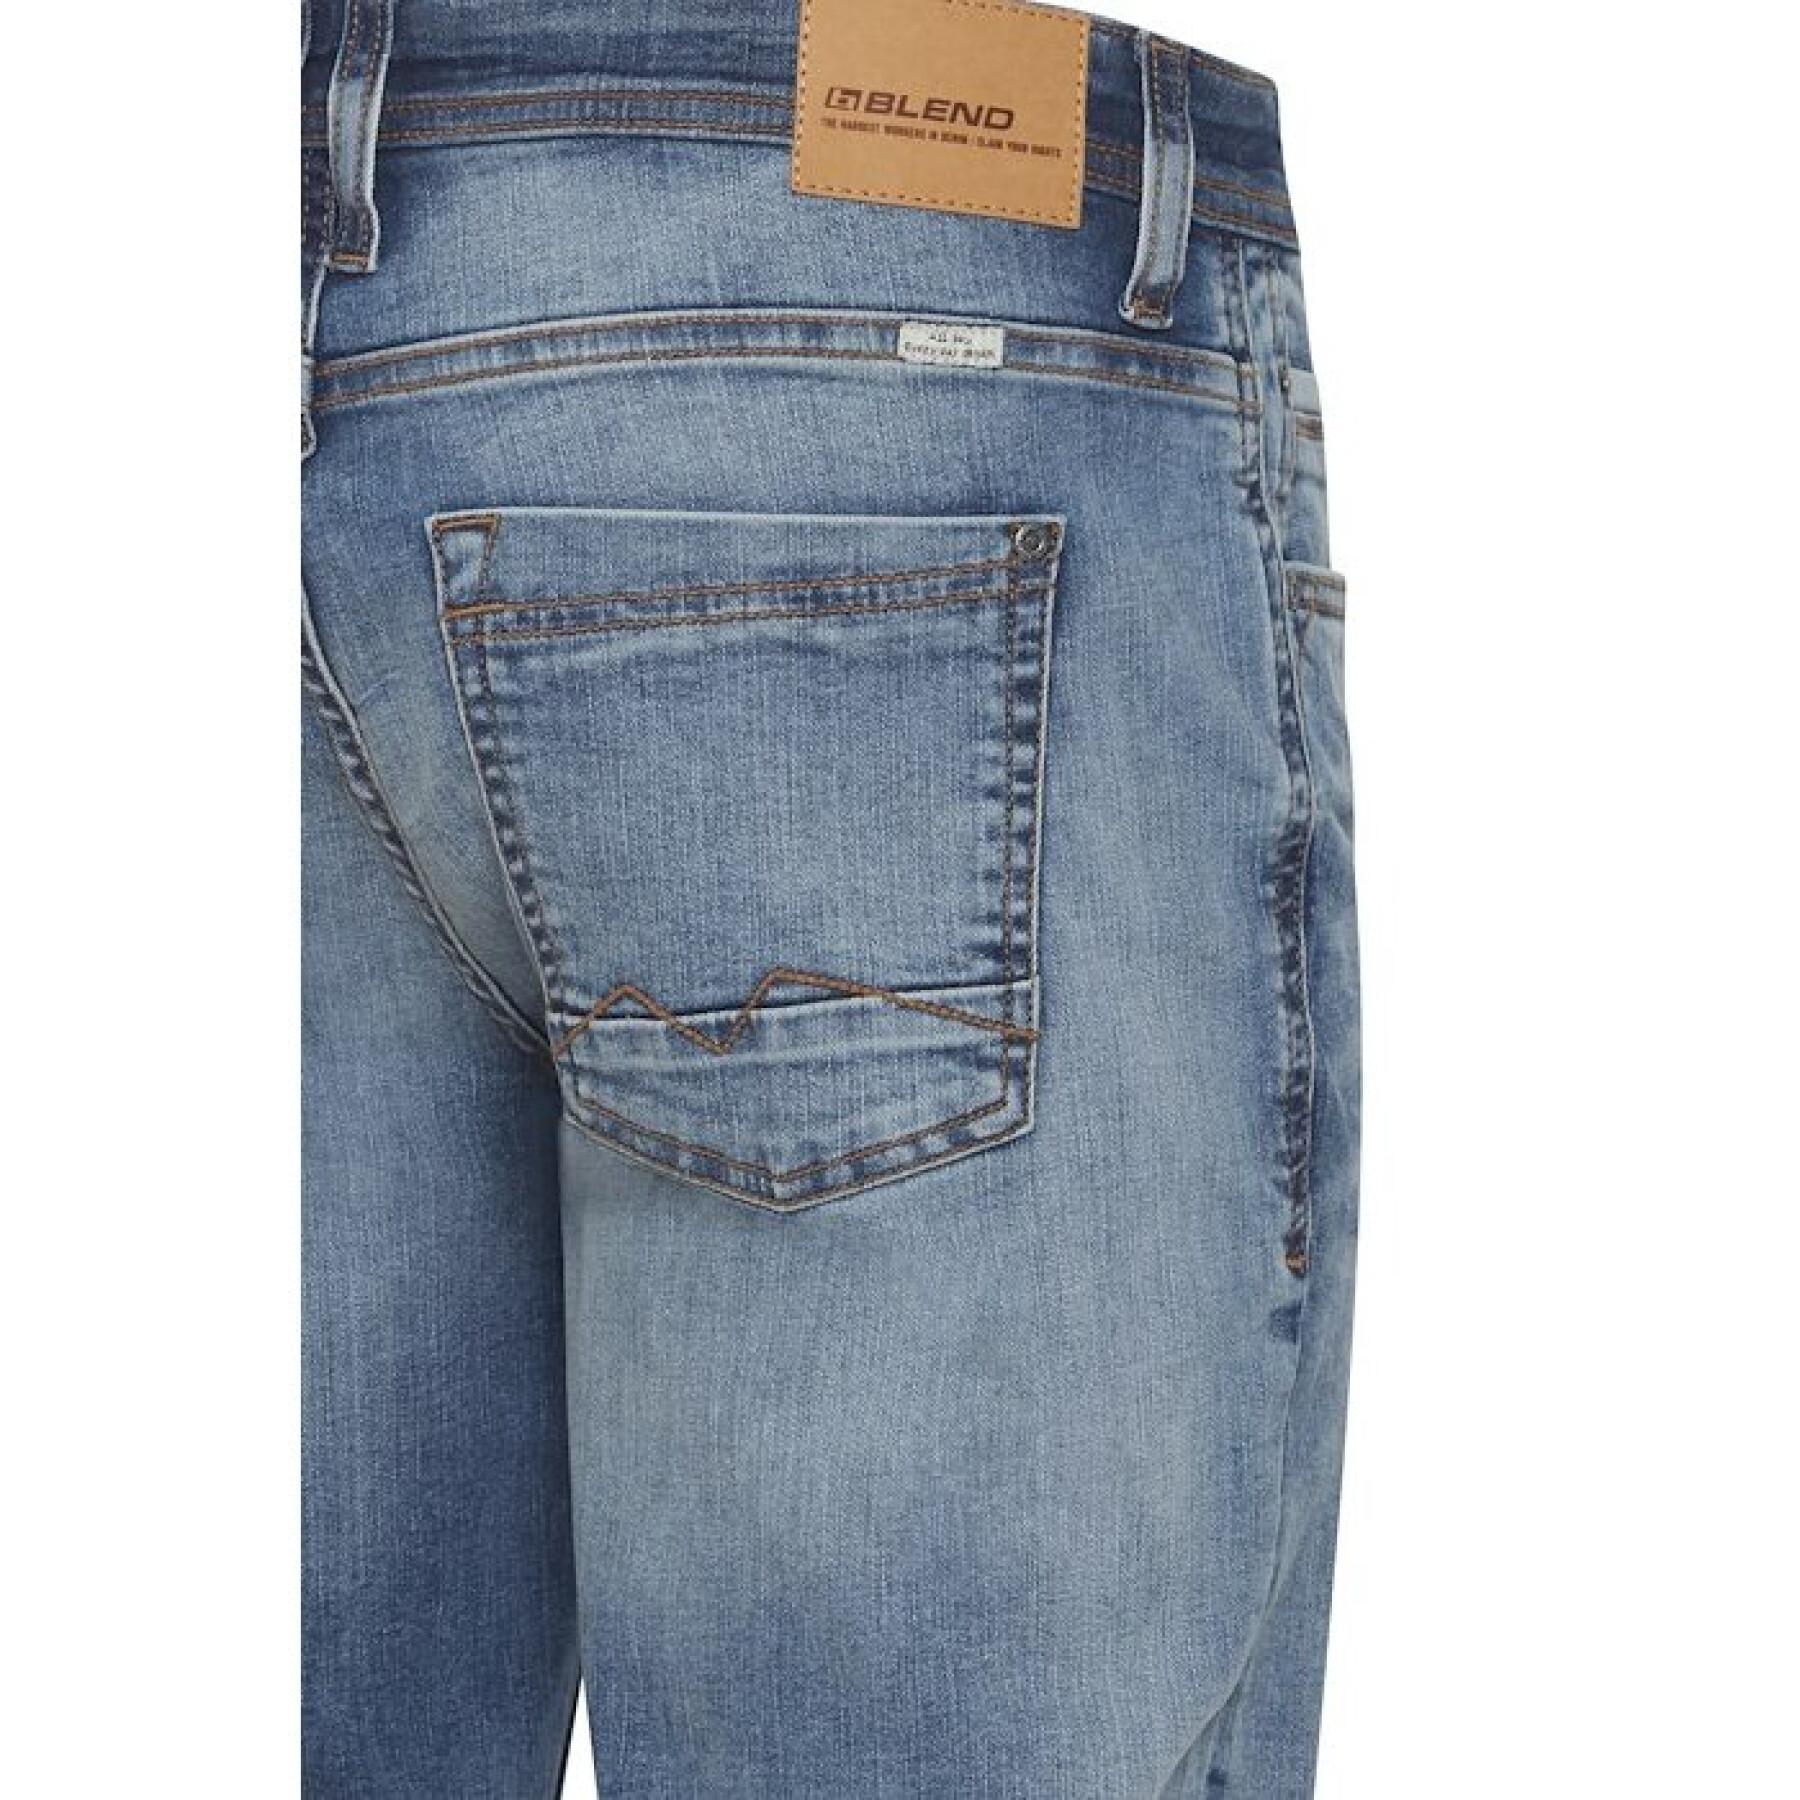 Jeans gedrehter Schnitt Blend Multiflex